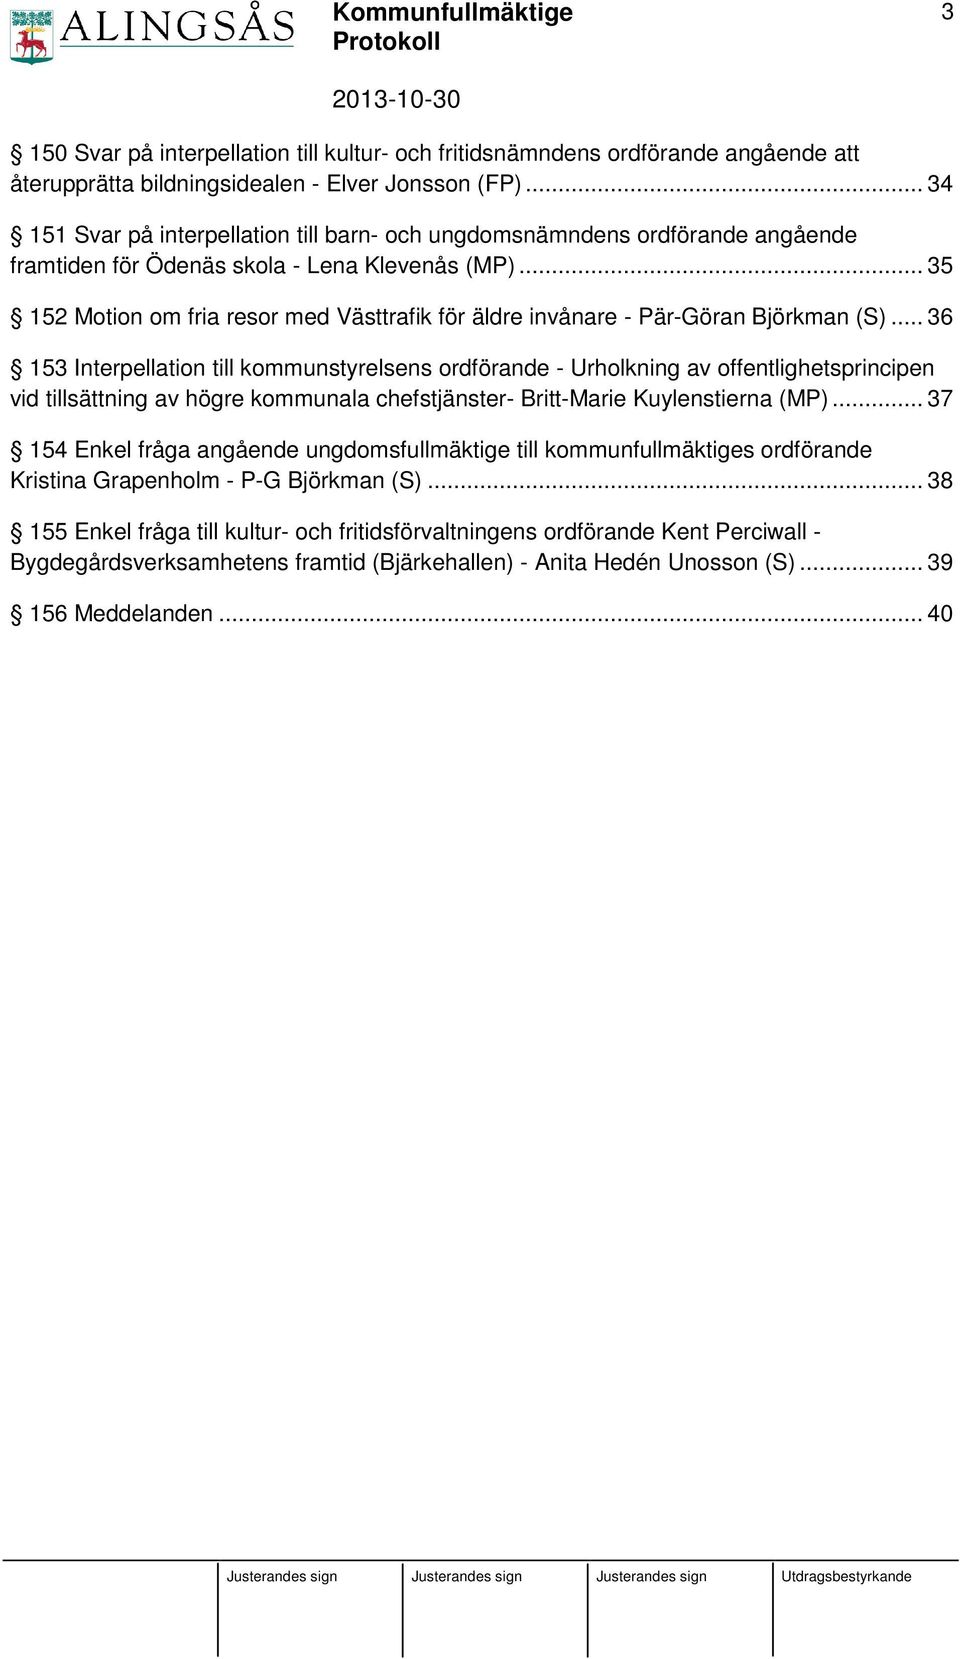 .. 35 152 Motion om fria resor med Västtrafik för äldre invånare - Pär-Göran Björkman (S).